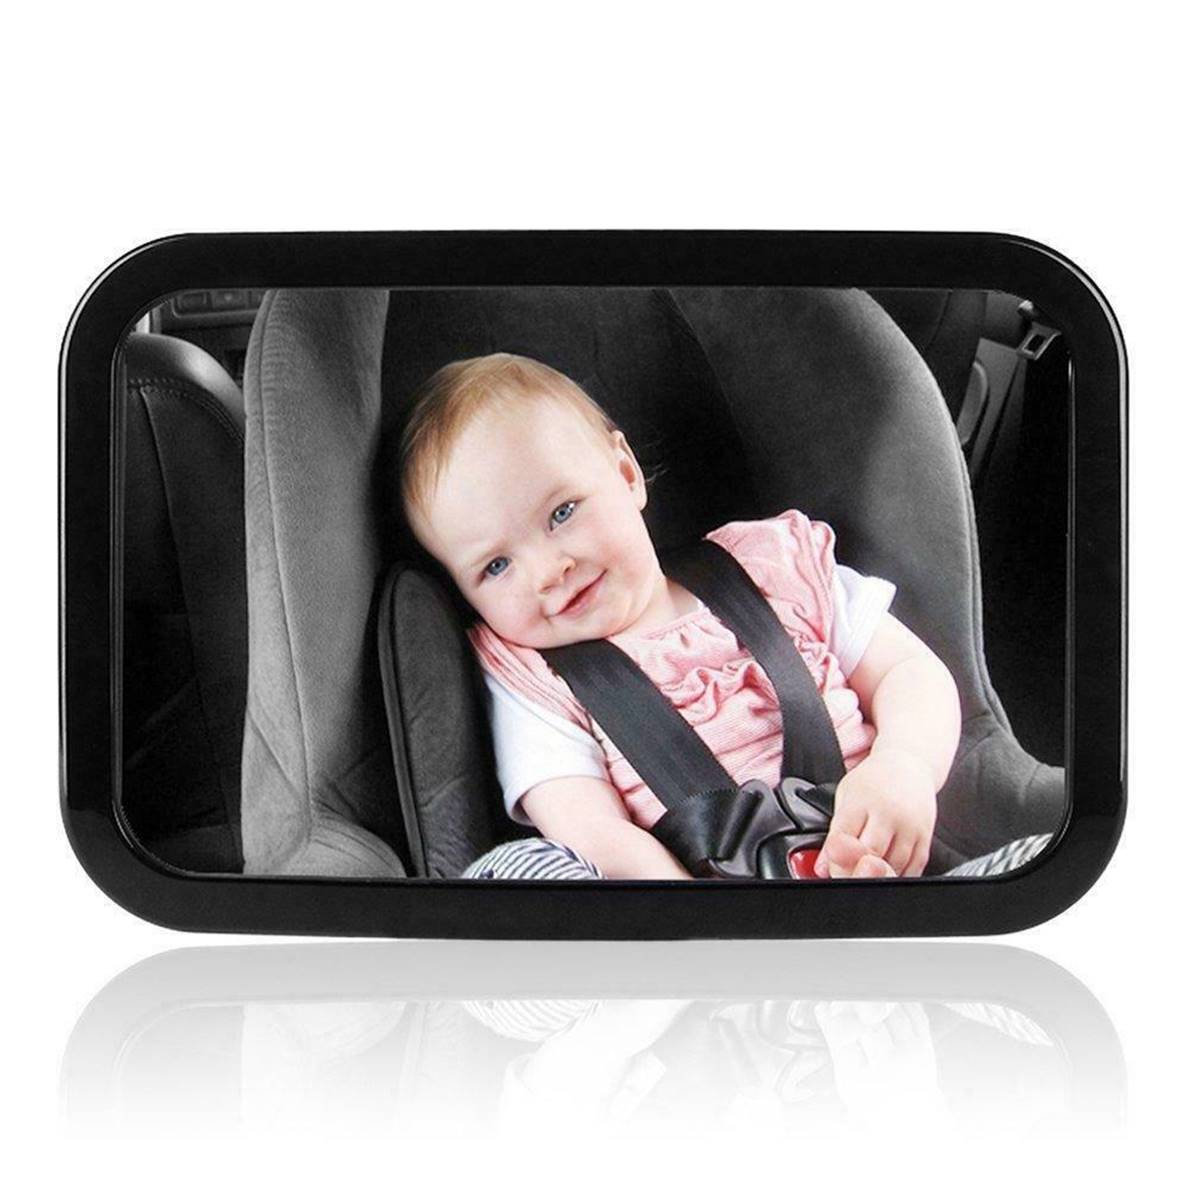 Rétroviseur voiture bébé - Baby mirror